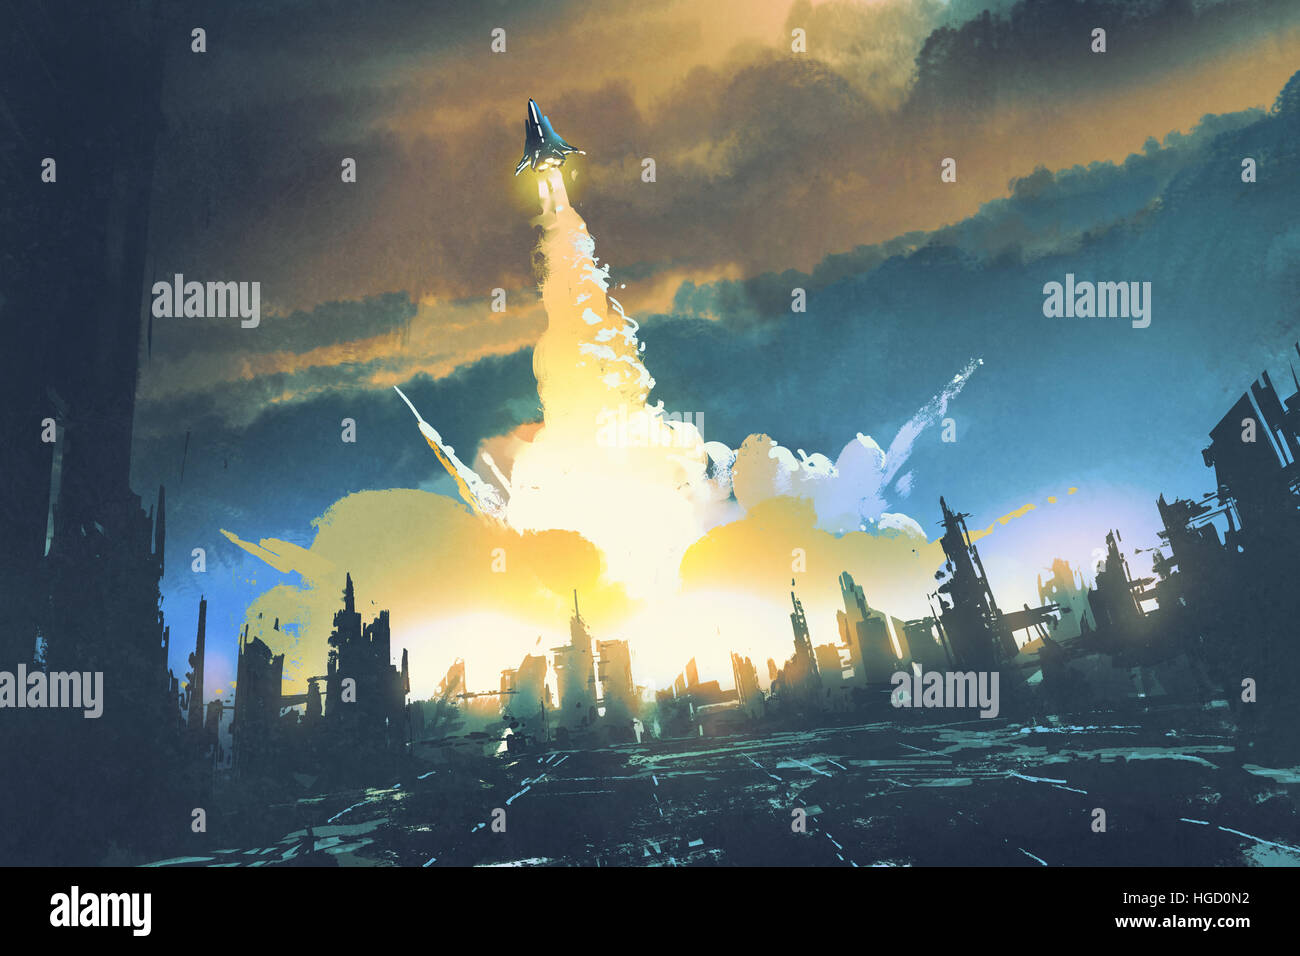 Lancement d'une fusée décoller d'une ville abandonnée,concept sci-fi,illustration peinture Banque D'Images